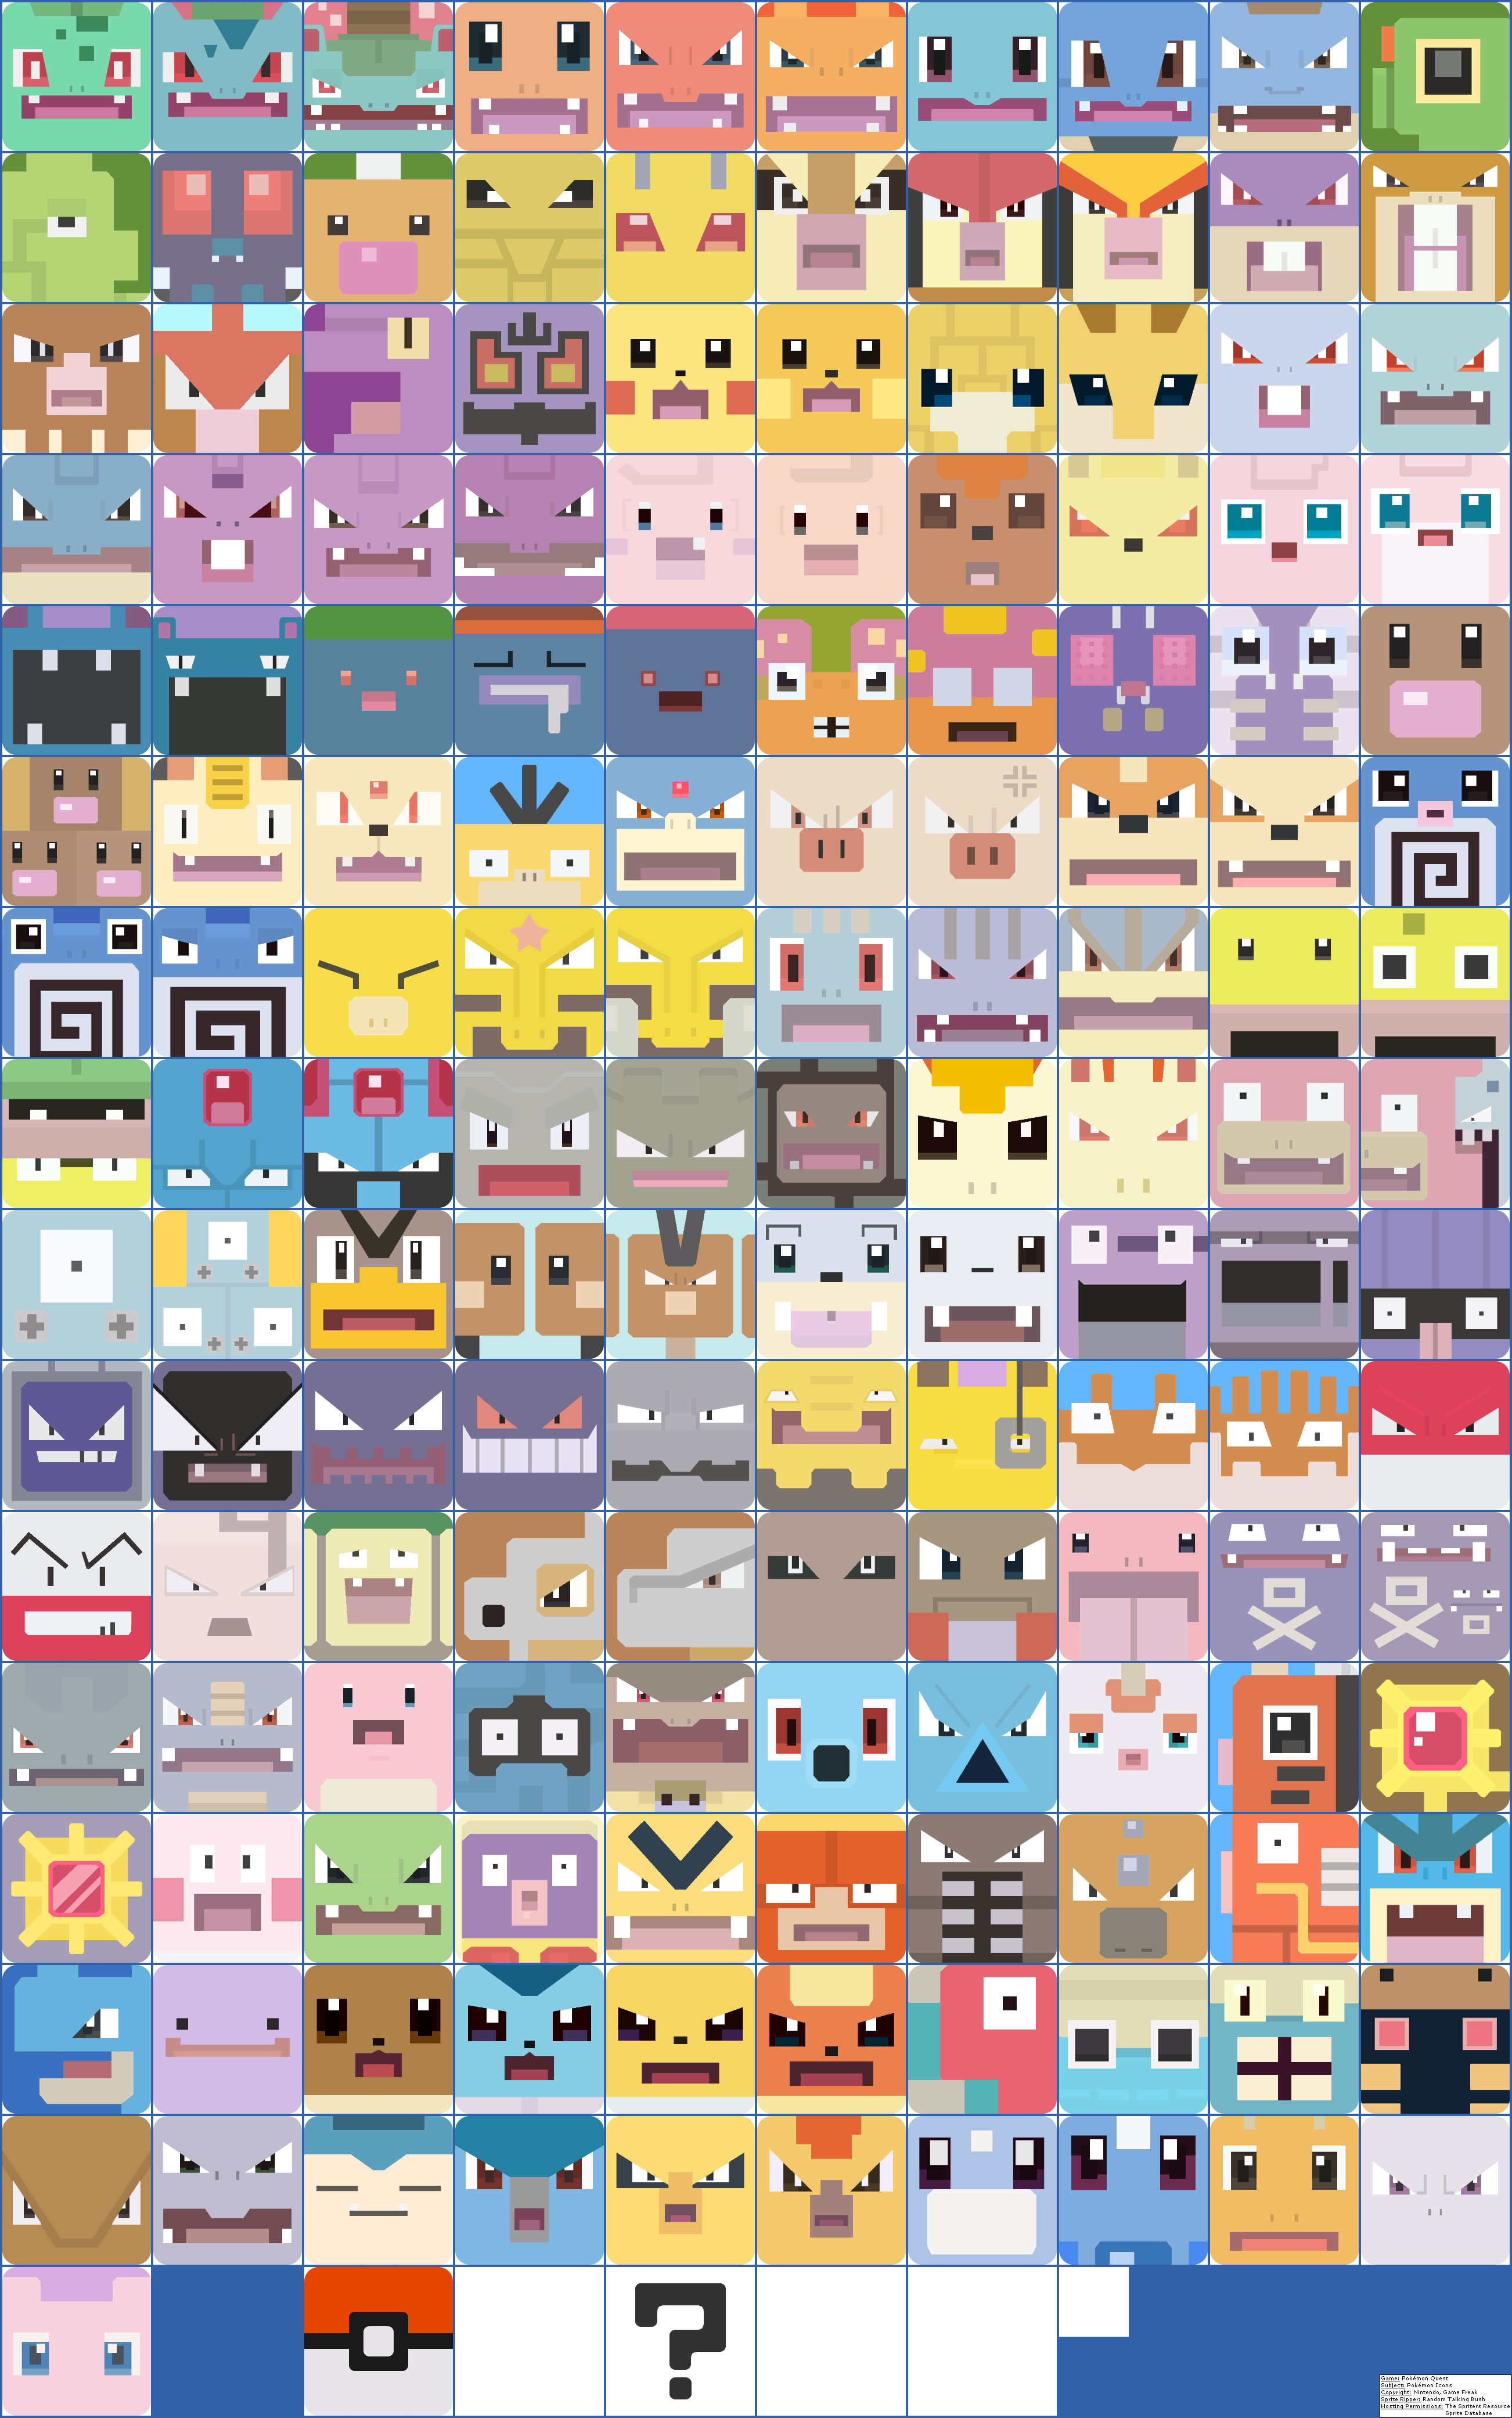 Pokémon Icons